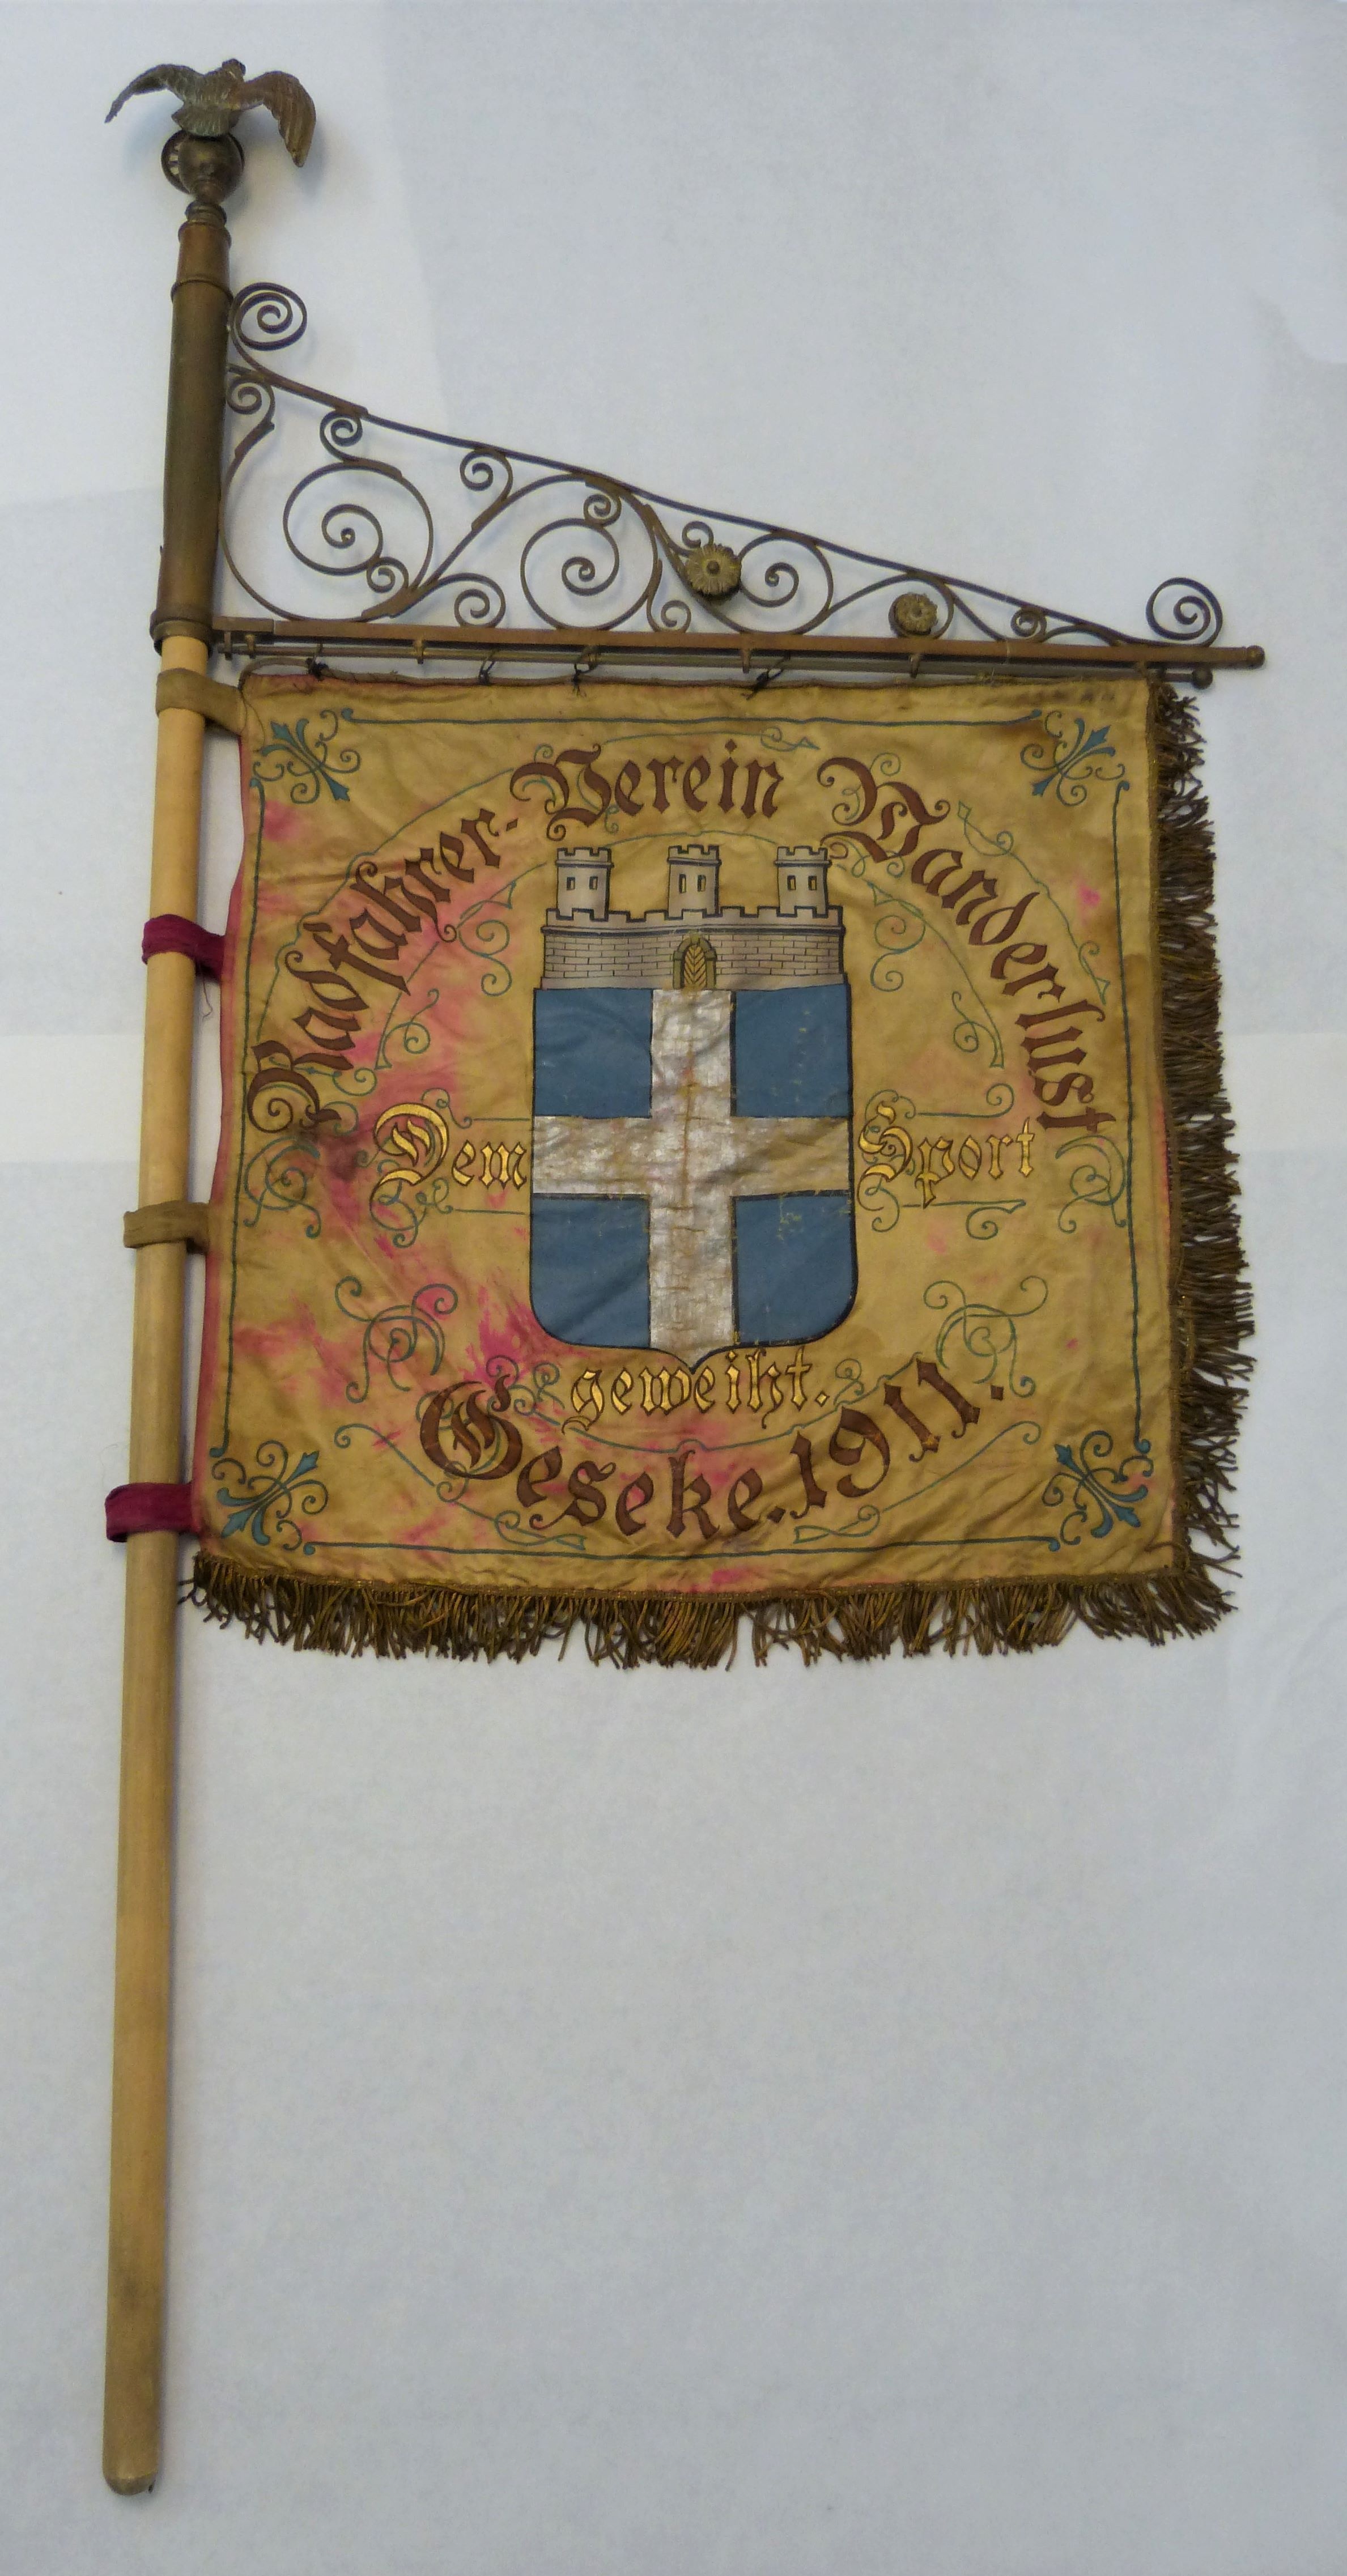 Fahne des Vereins "Radfahrer-Verein Wanderlust Geseke 1911" (Städt. Hellweg-Museum Geseke CC BY-NC-SA)